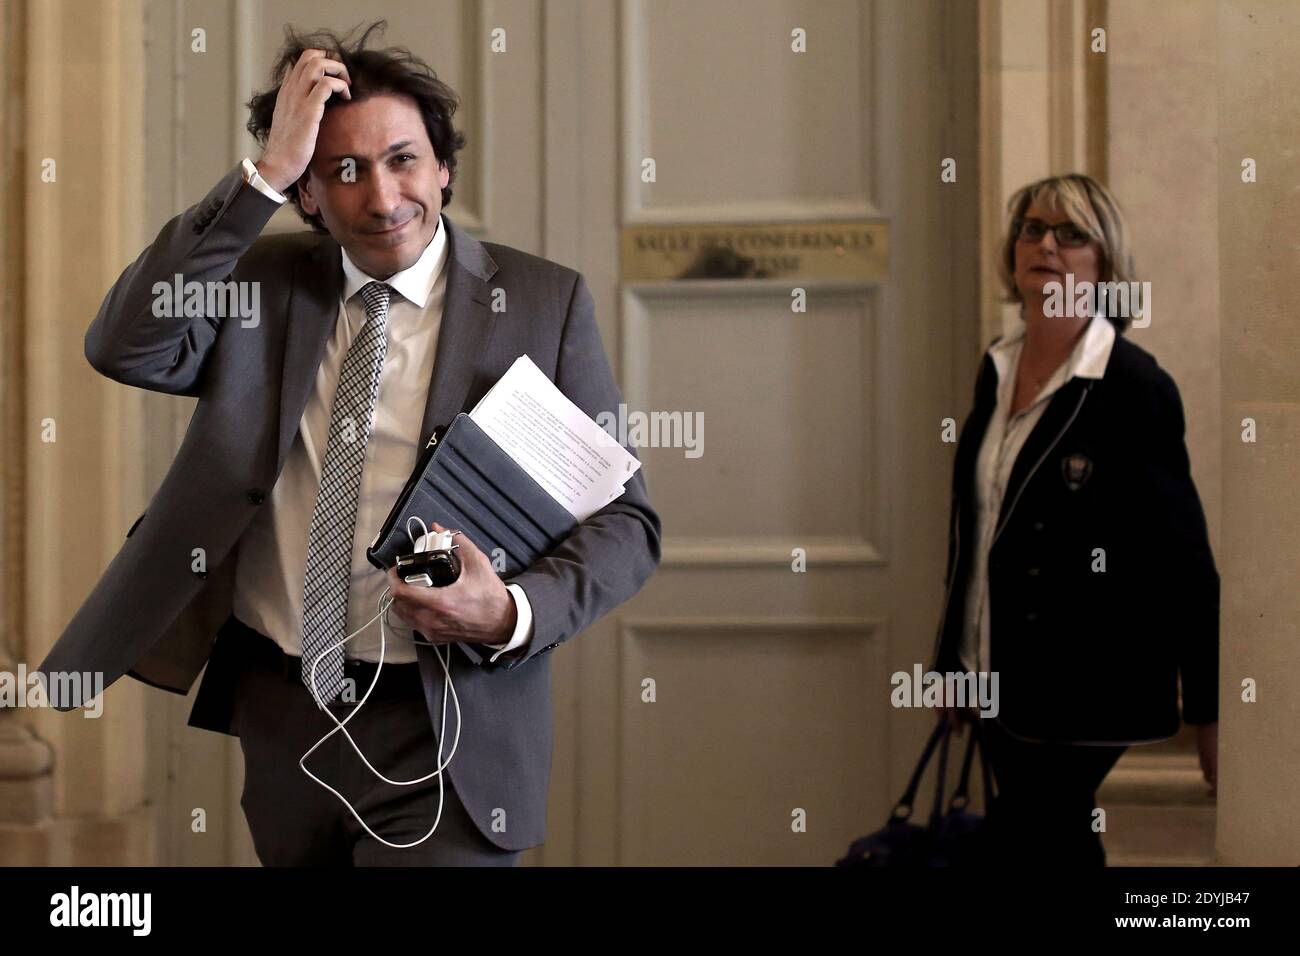 Le député d'Essonne, Jérôme Guedj, est photographié à la salle des quatre colonnes à l'Assemblée nationale, à Paris, le 16 avril 2013. Photo de Stephane Lemouton/ABACAPRESS.COM Banque D'Images